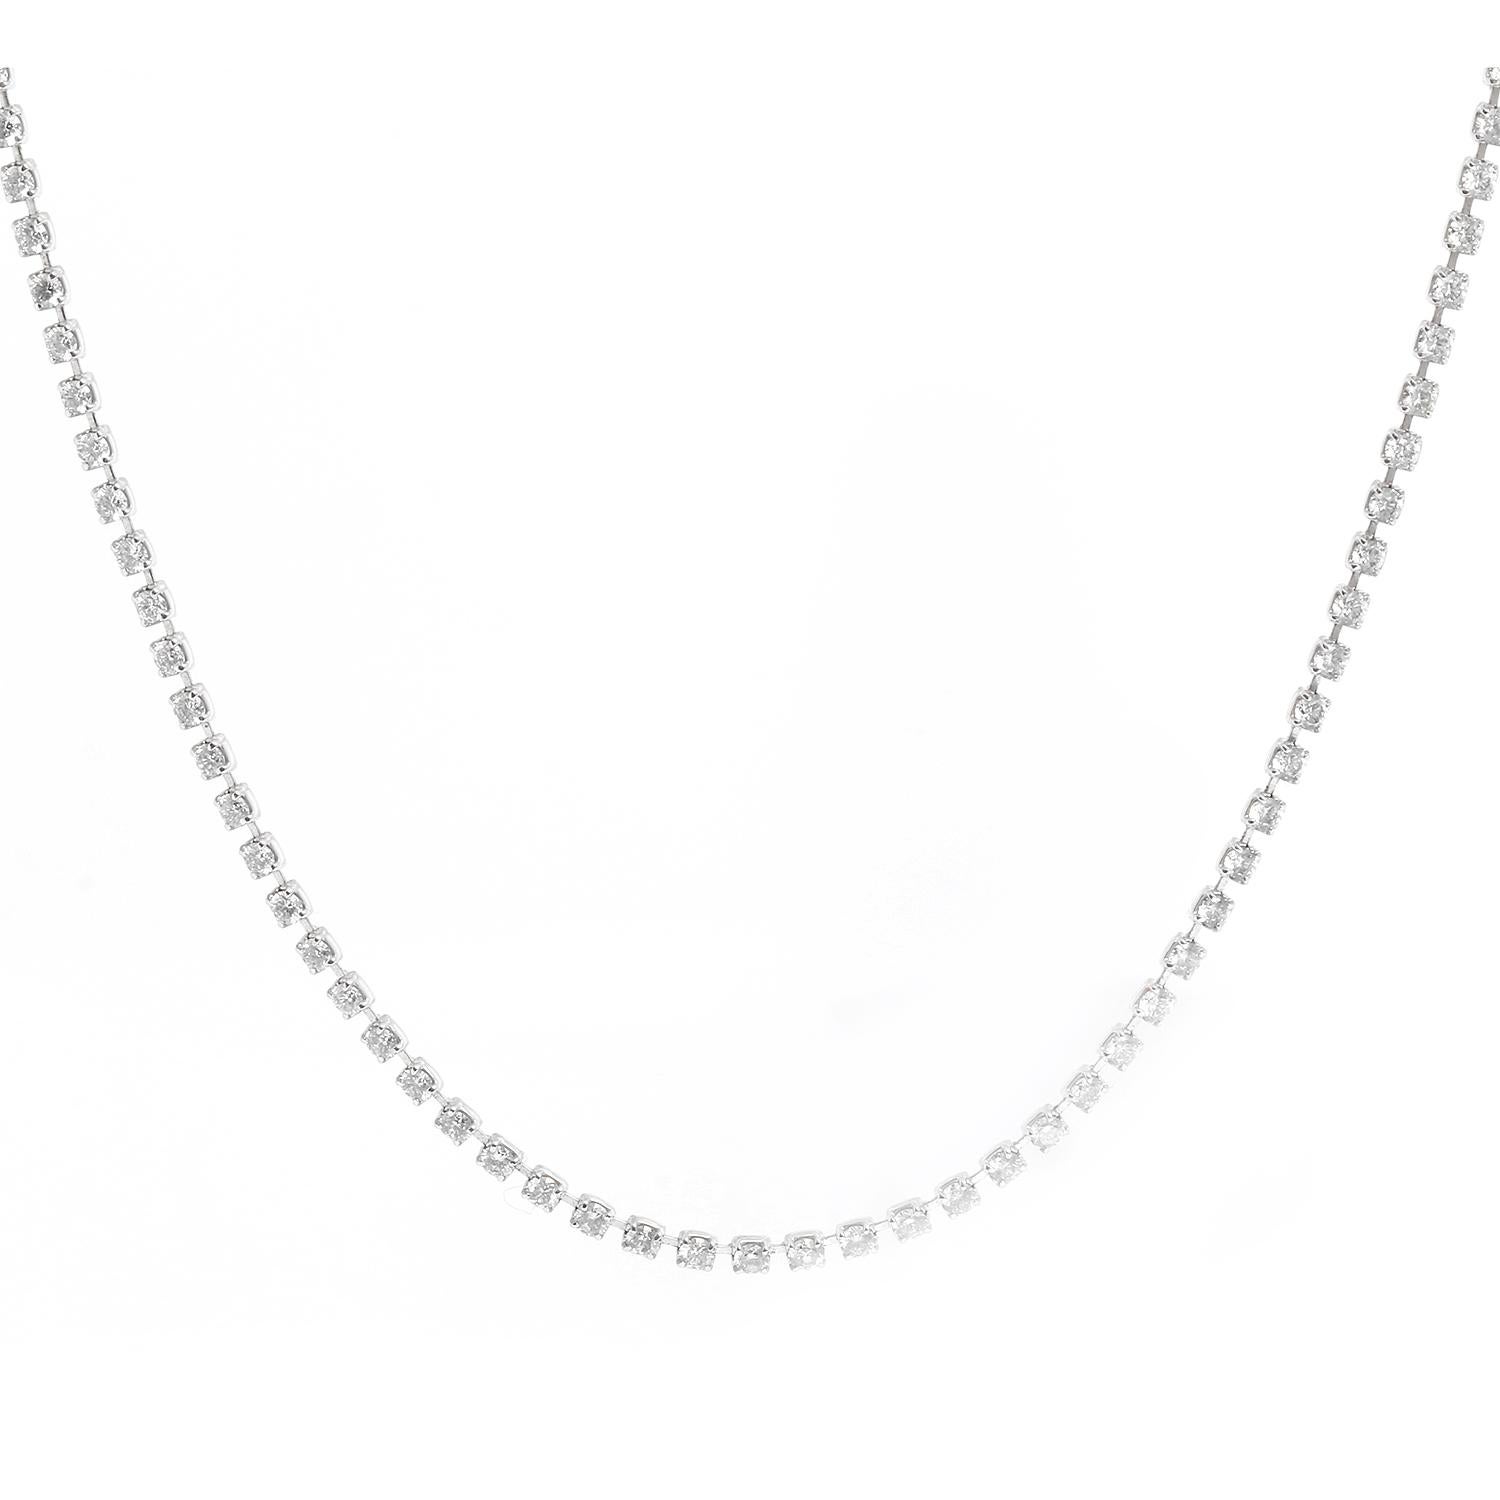 Platinum Tennis Necklace 5.33 carats For Sale 1